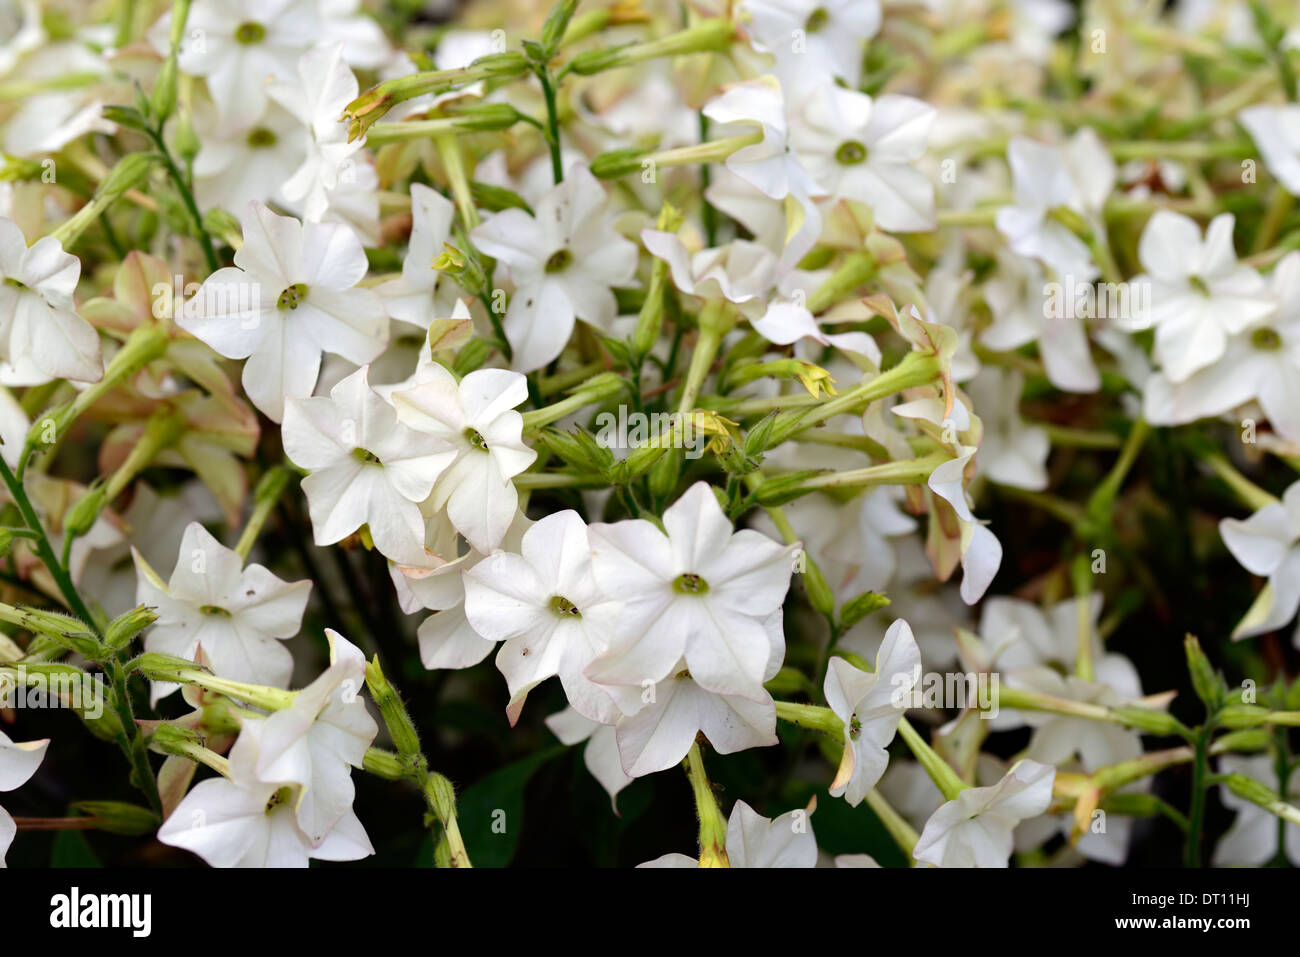 Nicotiana alata profumo bianco annuari annuale di fiori profumati fiori profumati dei ritratti di piante fiorite letto Letti piante Foto Stock